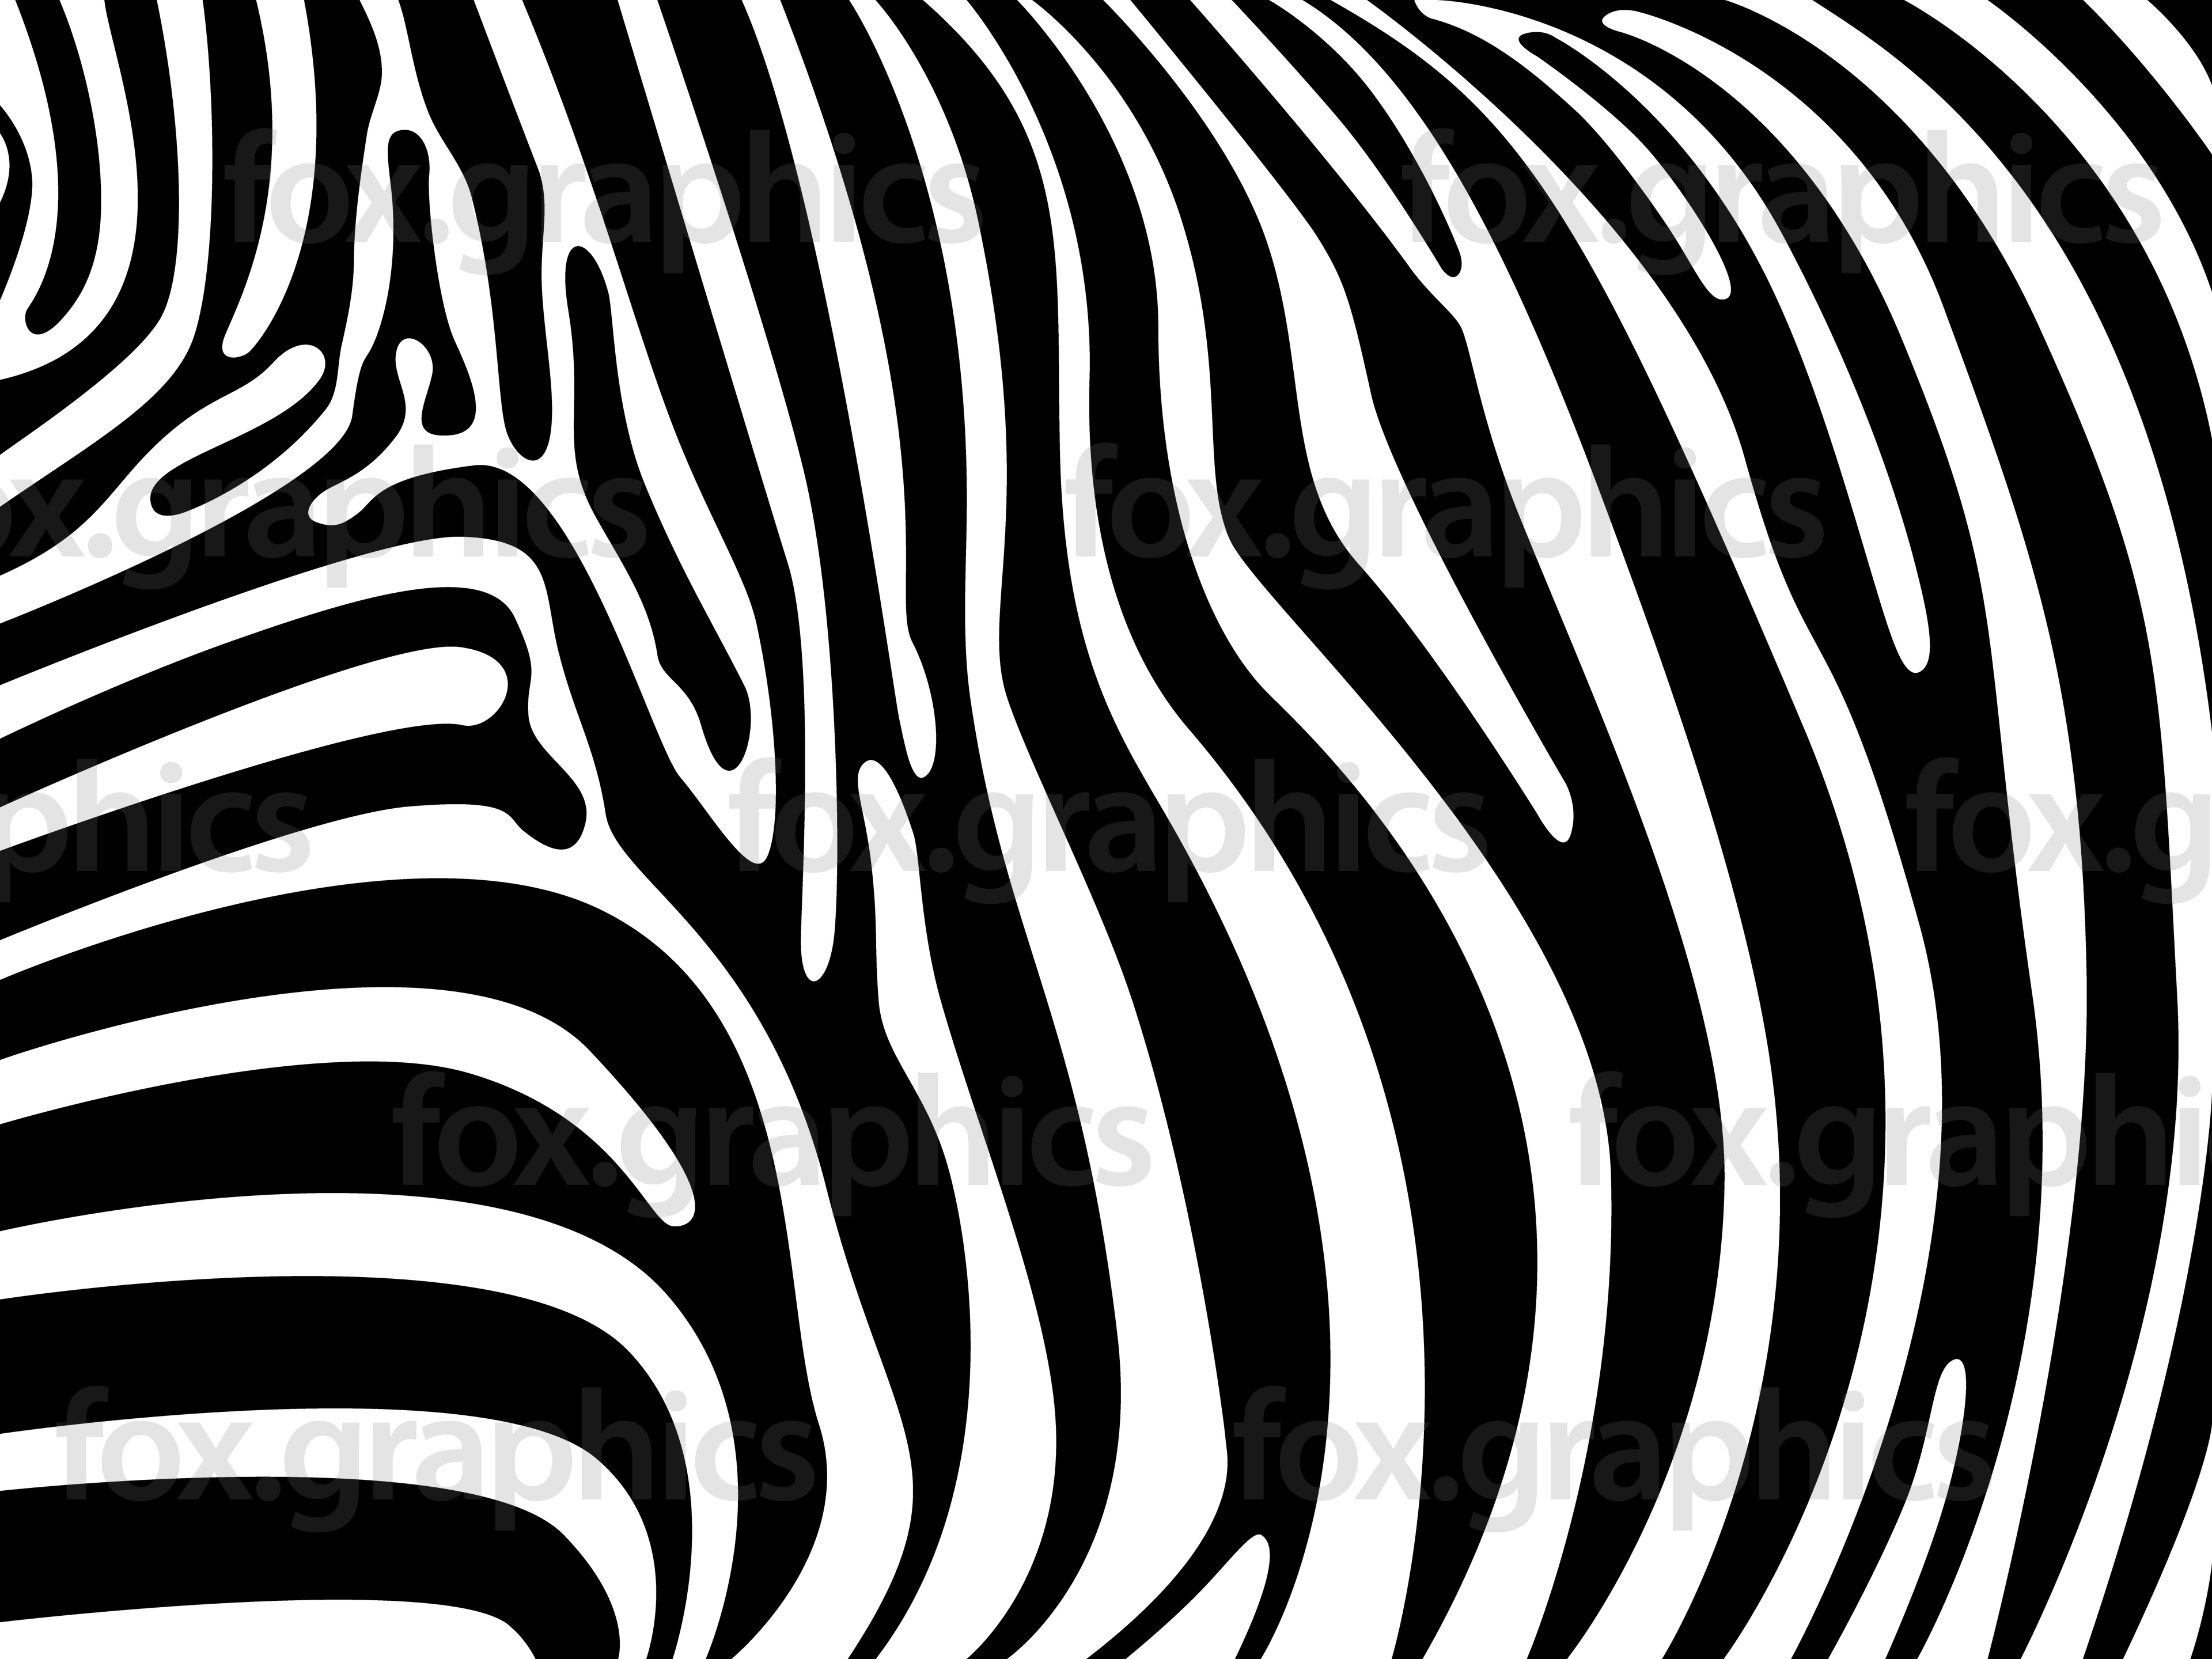 Zebra Print Vector at GetDrawings Free download